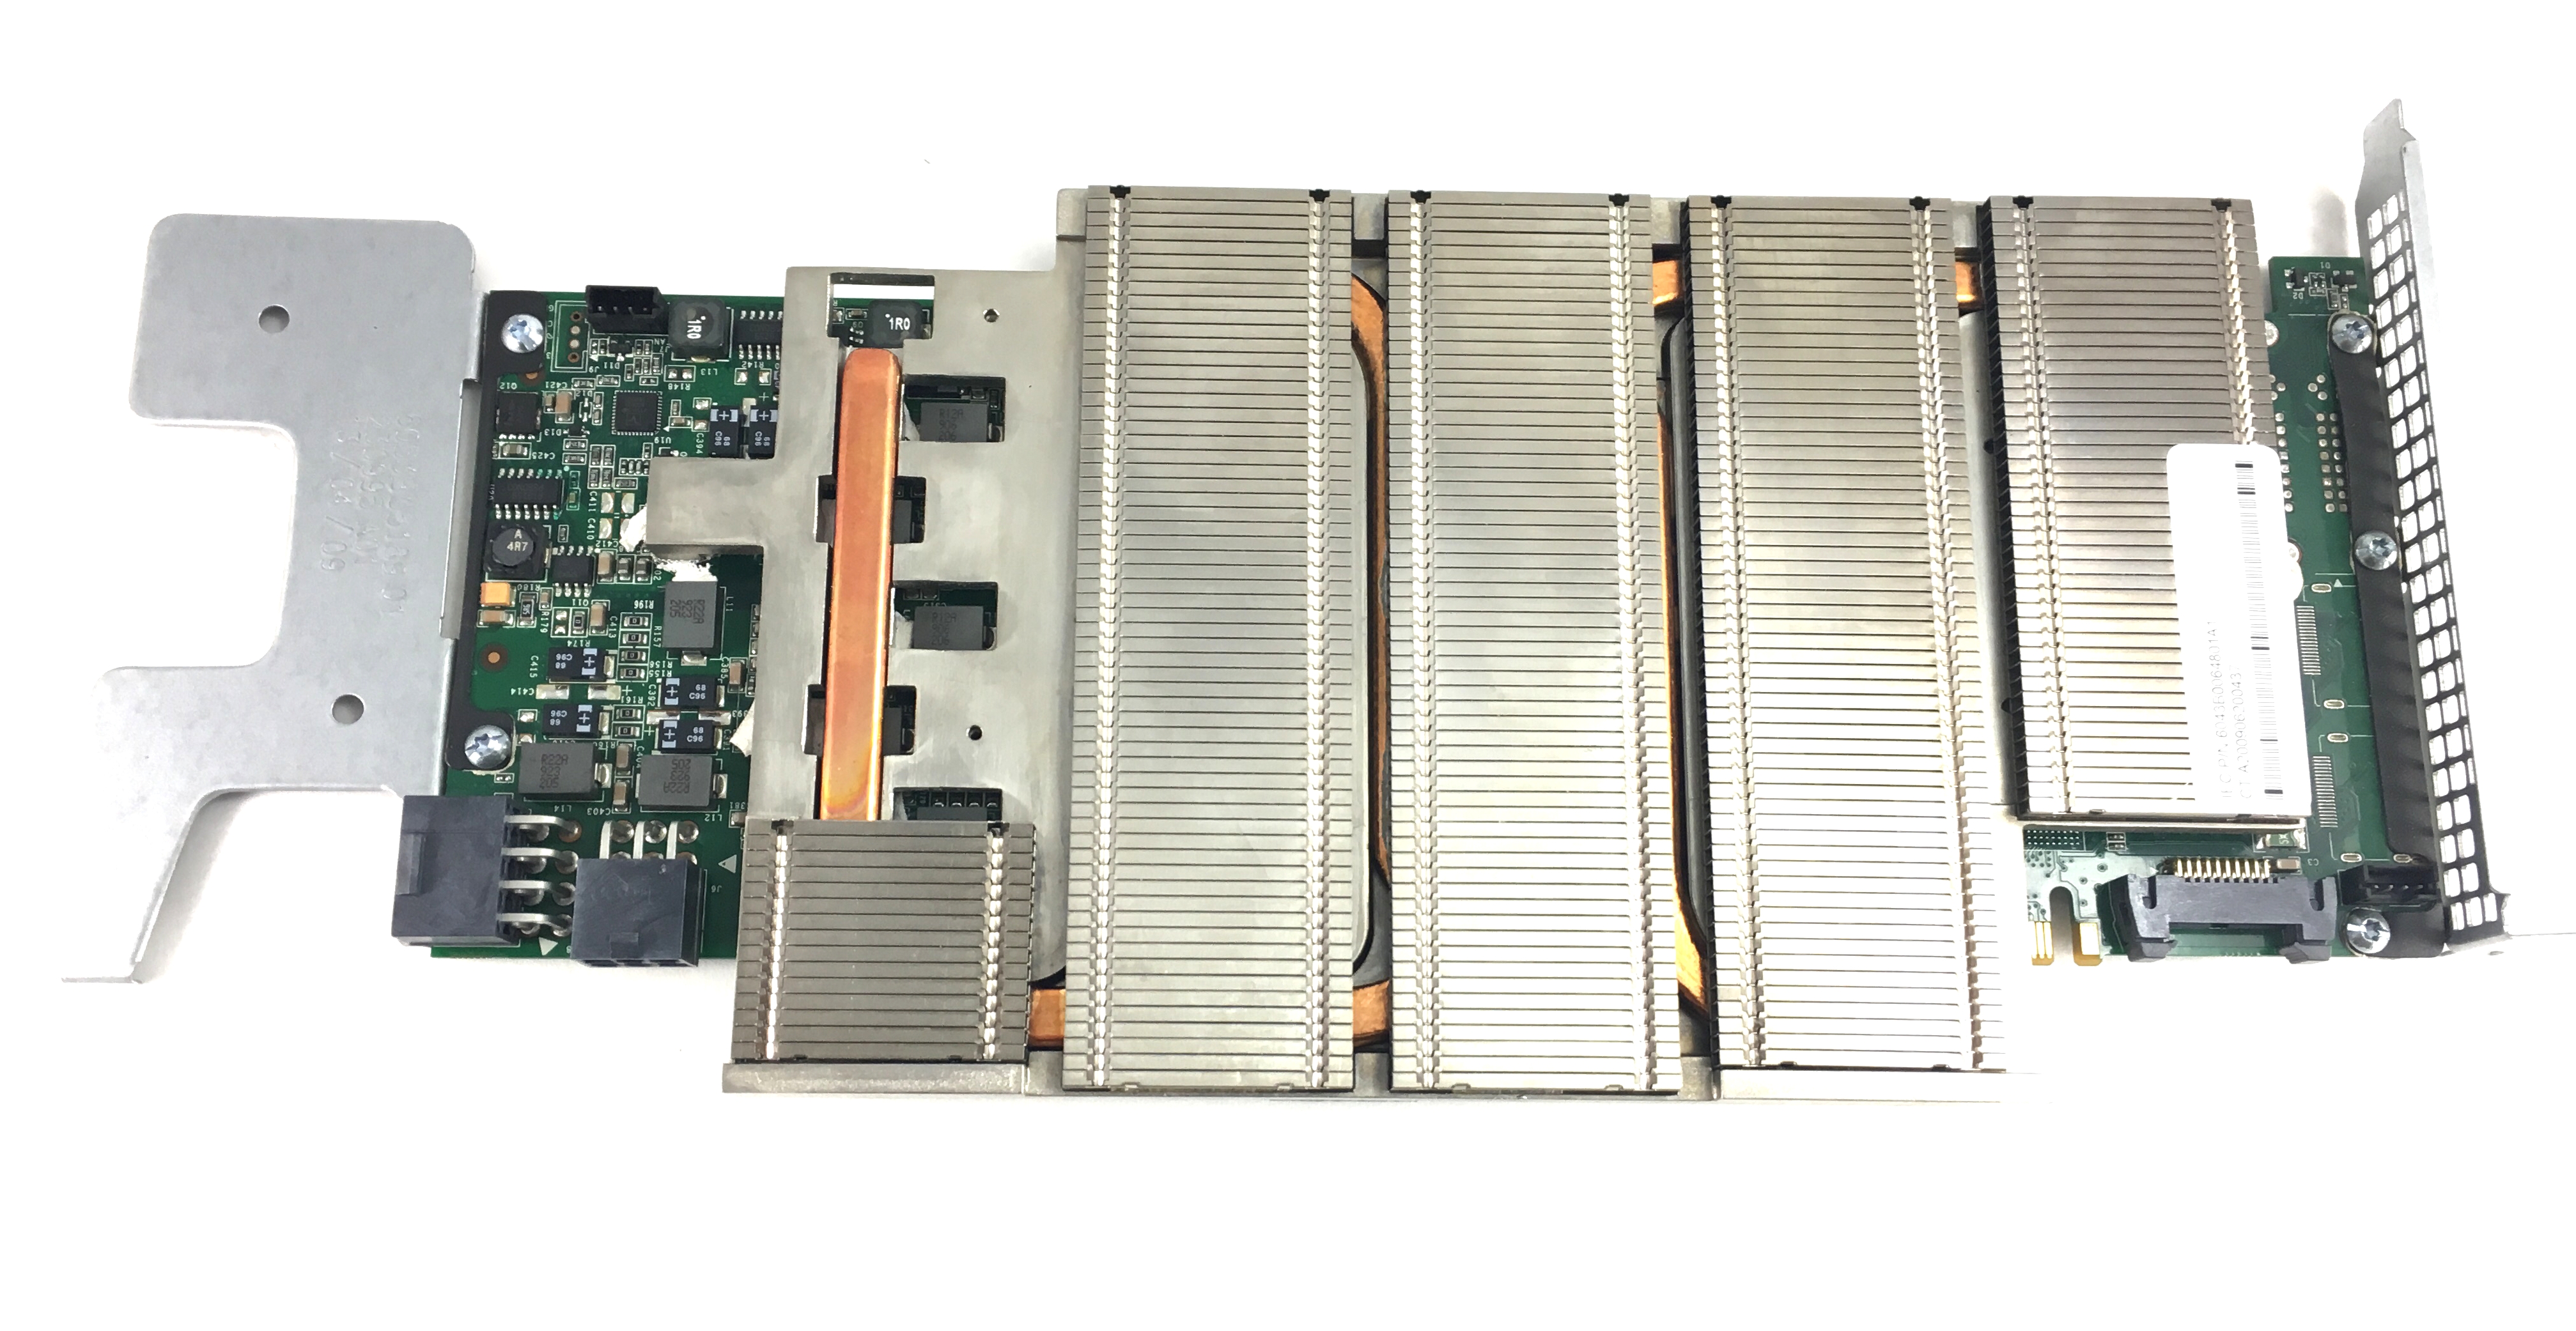 Nvidia Tesla M1060 4GB GDDR3 SDRAM PCI-E X16 Graphics Processing Unit (570377-001)